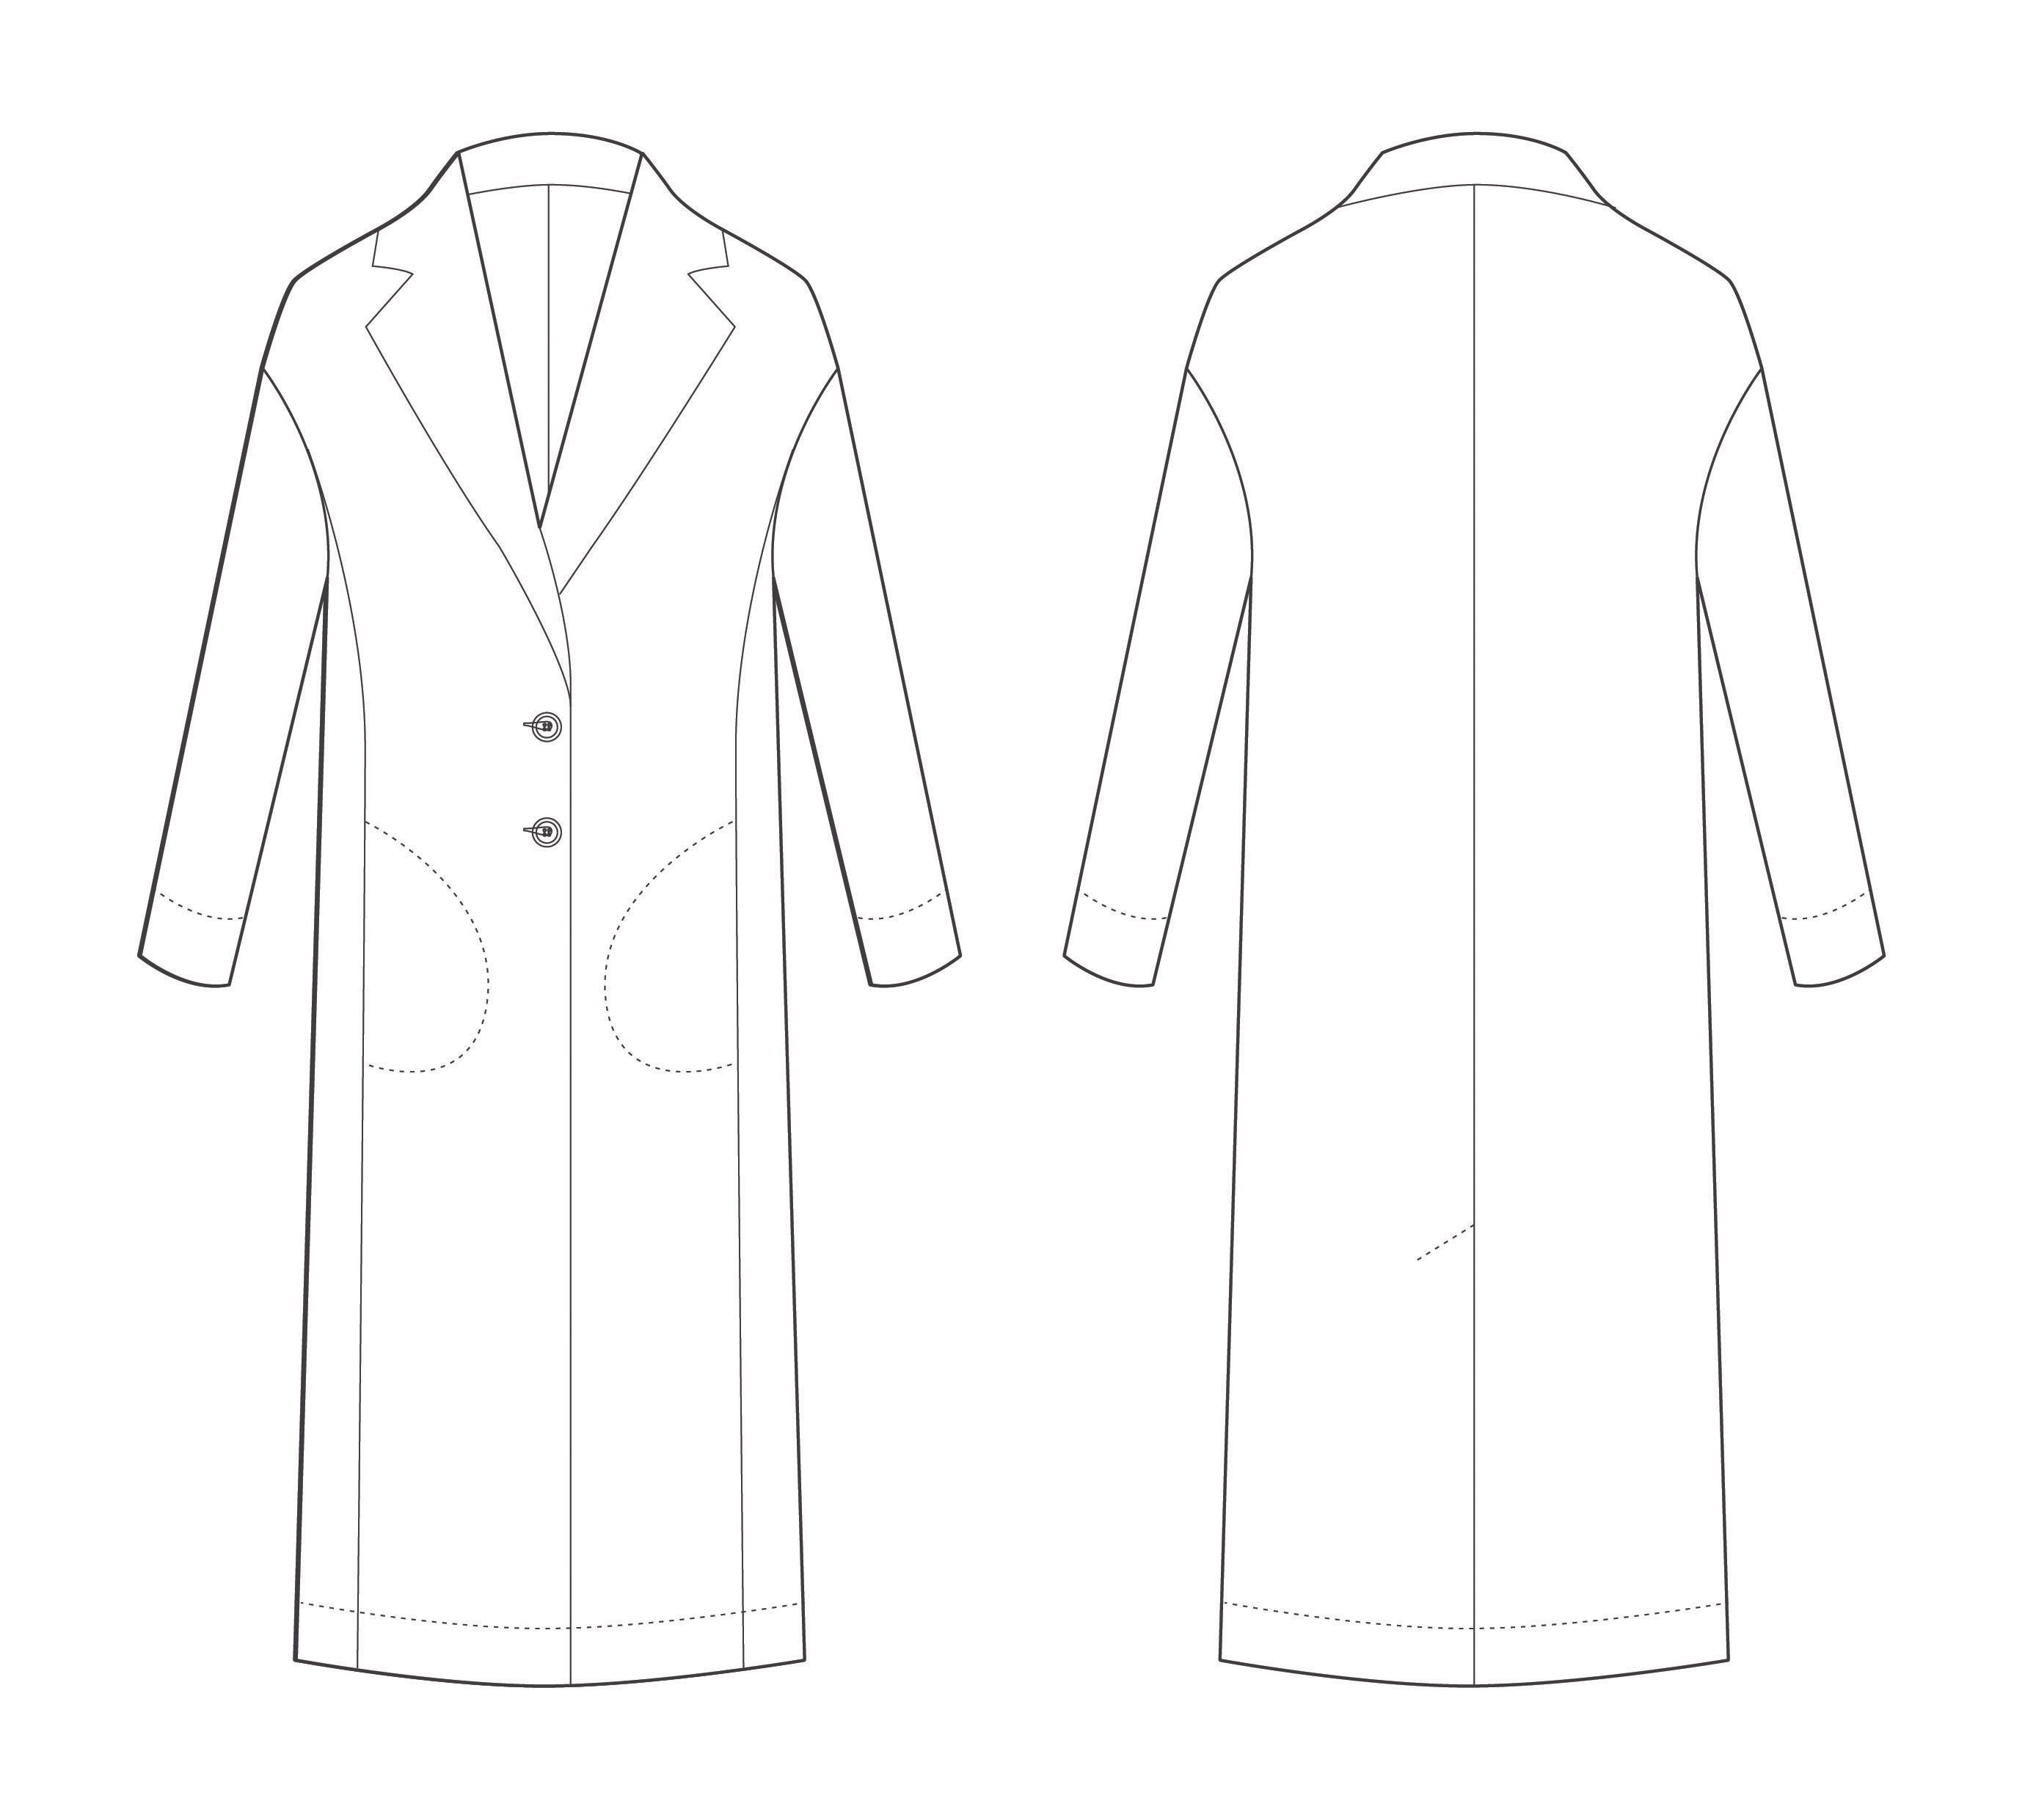 Технический эскиз пальто женского